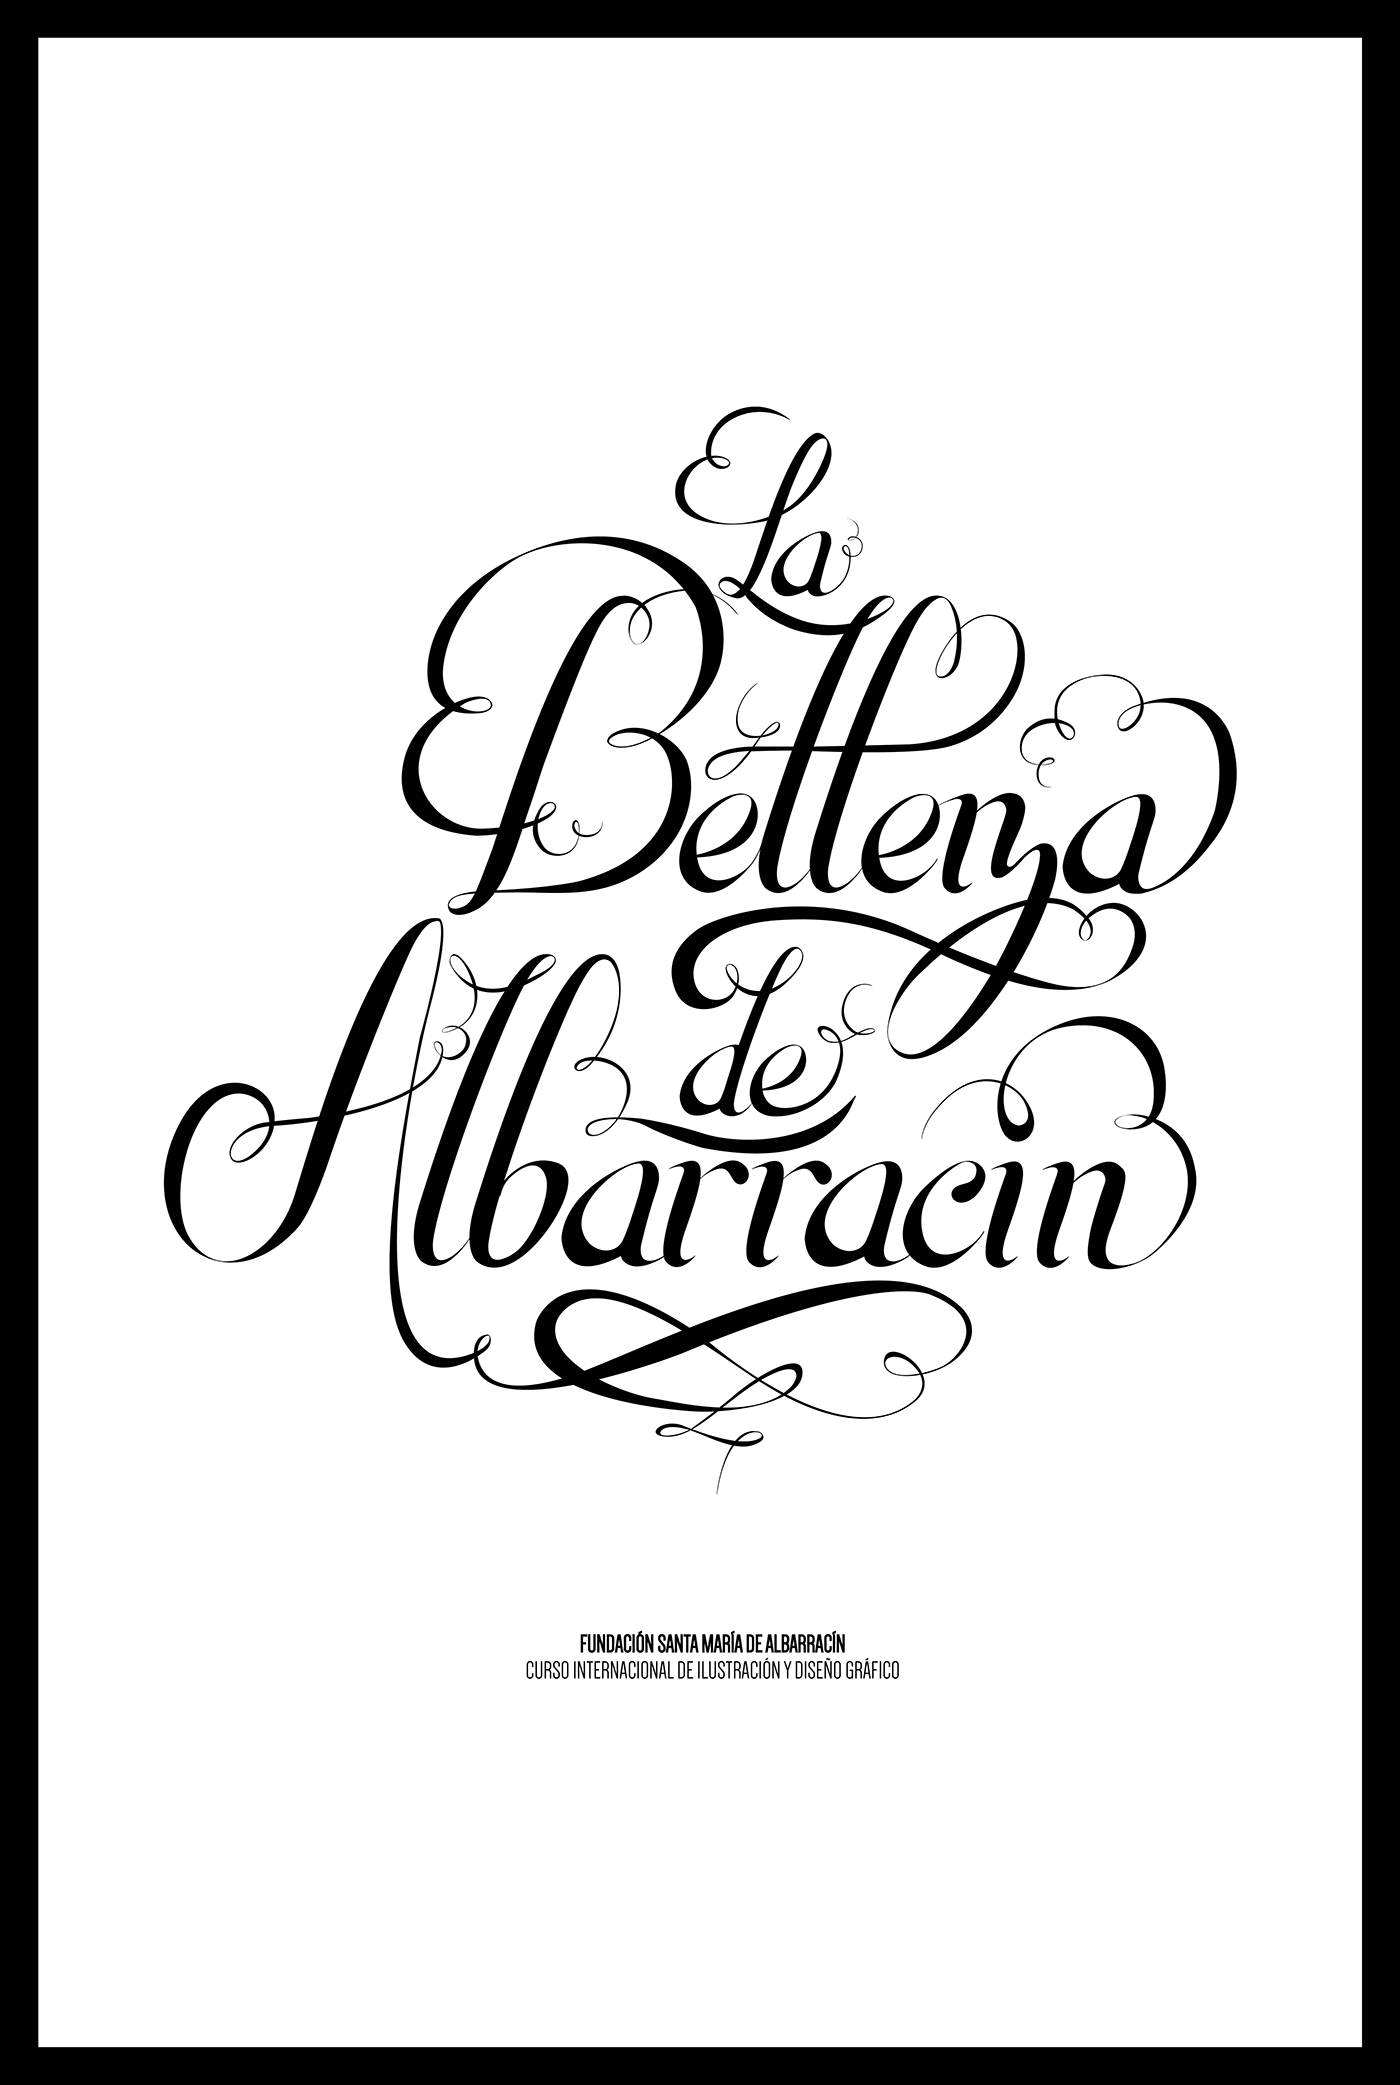 Handmande lettering lettering atmosphere albarracin spain